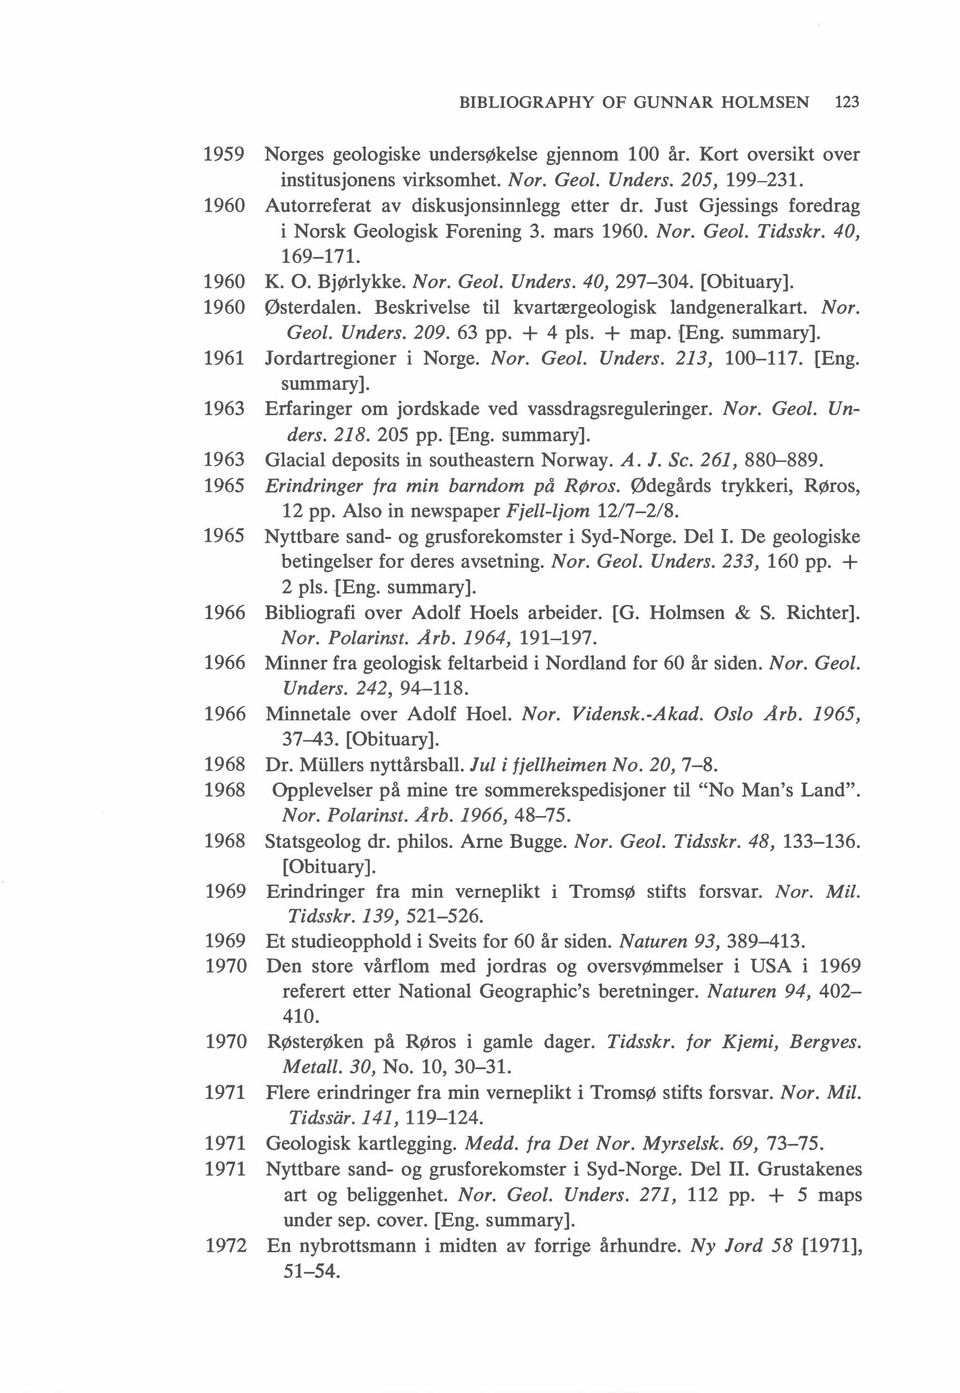 [Obituary]. 1960 Østerdalen. Beskrivelse til kvartærgeologisk landgeneralkart. Nor. Geol. Unders. 209. 63 pp. + 4 pls. + map. [Eng. summary]. 1961 Jordartregioner i Norge. Nor. Geol. Unders. 213, 100-117.